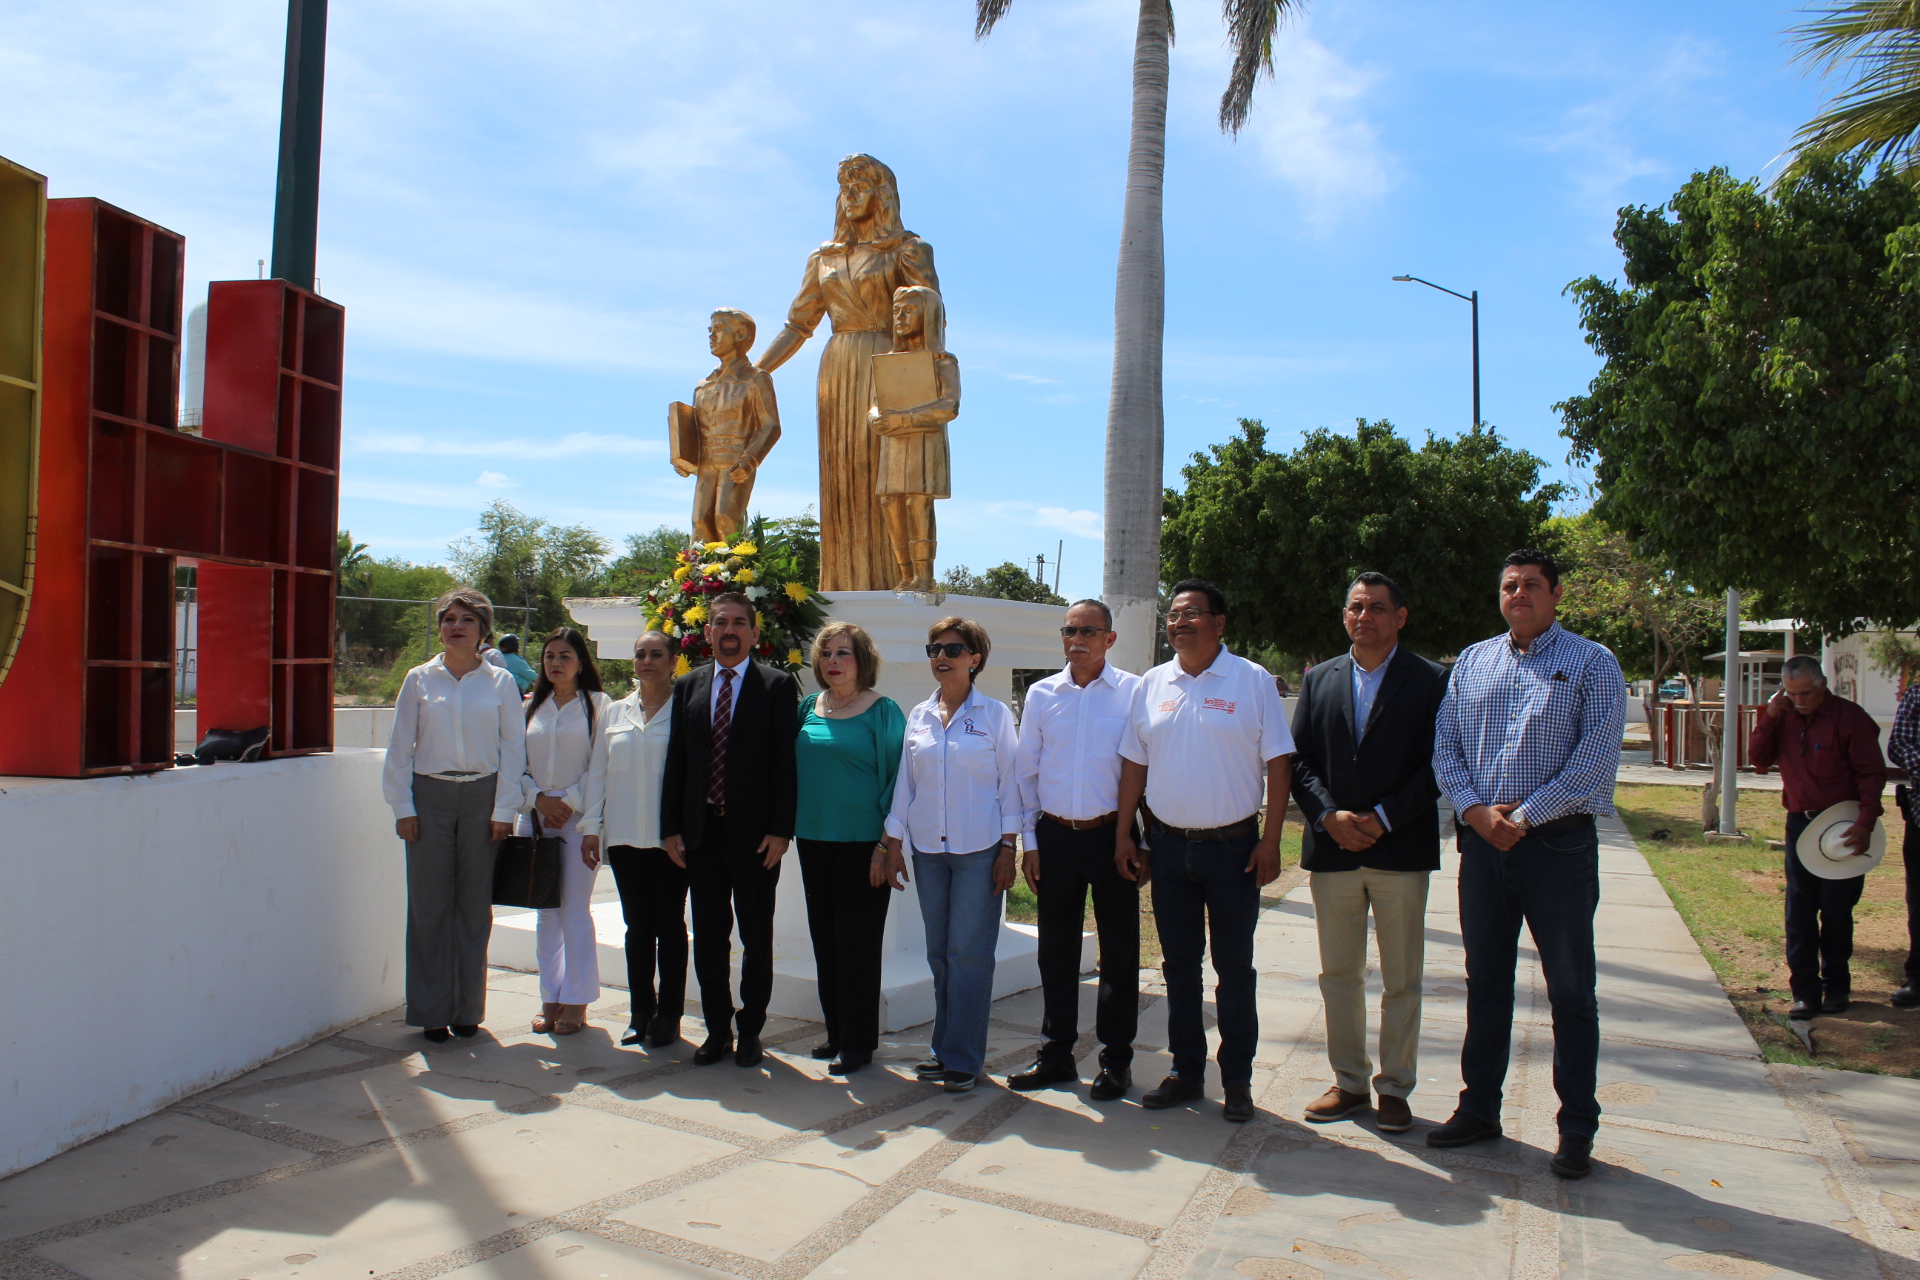 Dr. Gil Arturo Quijano Vega preside emotivo homenaje en el Día del Maestro en Huatabampo